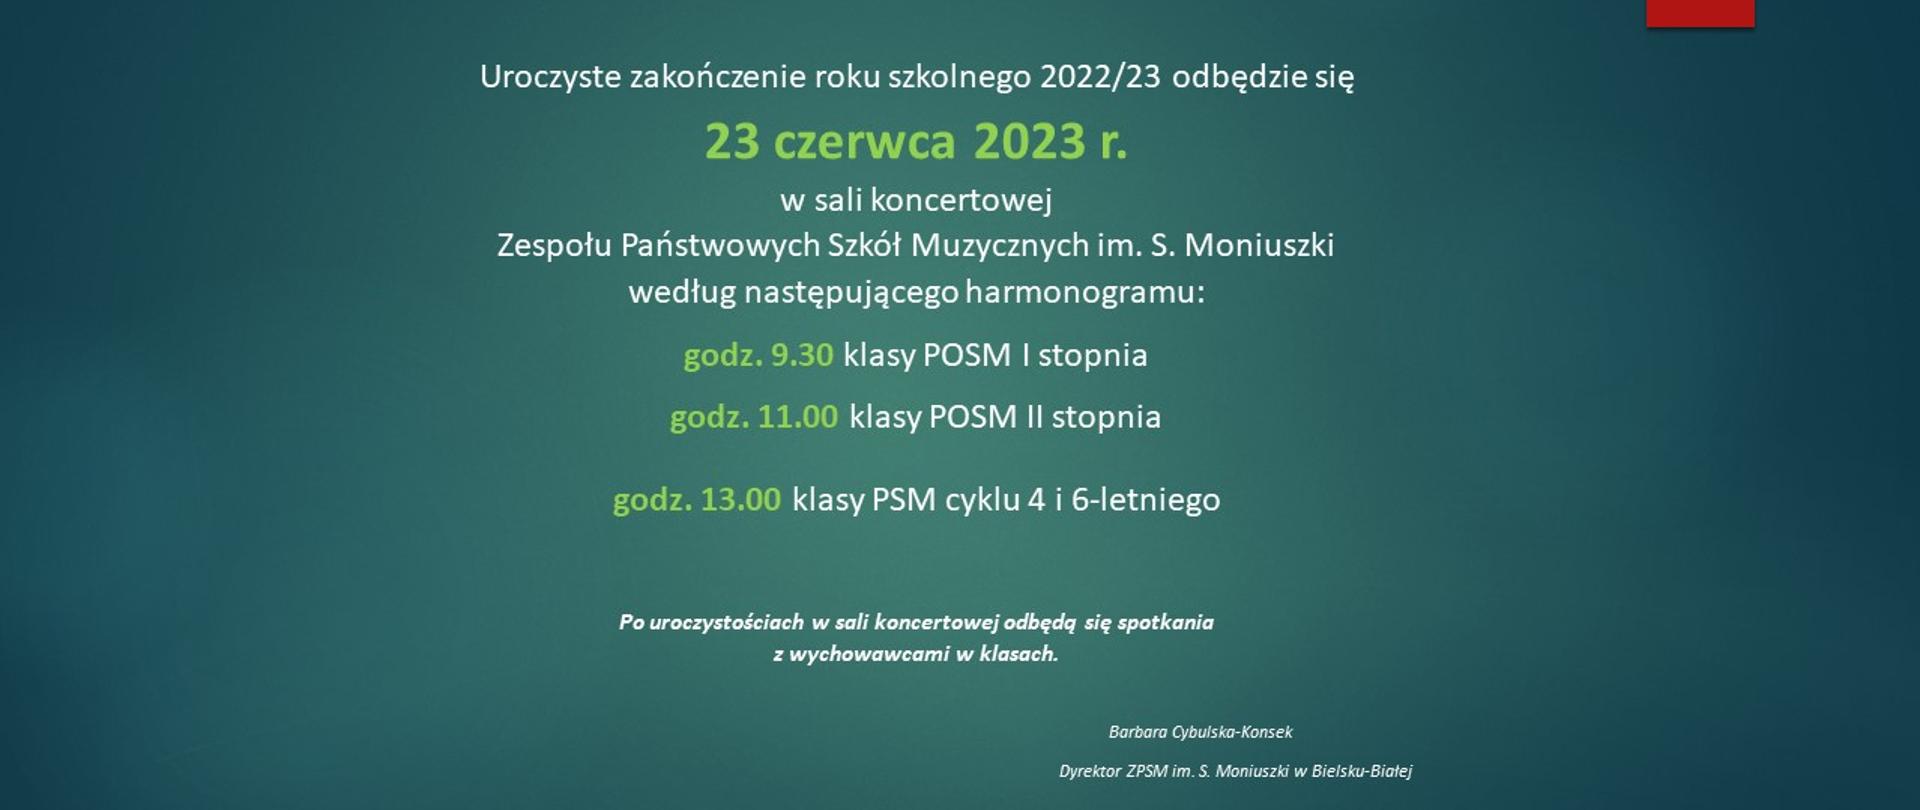 napis na zielonym tle uroczyste zakończenie roku szkolnego 2022